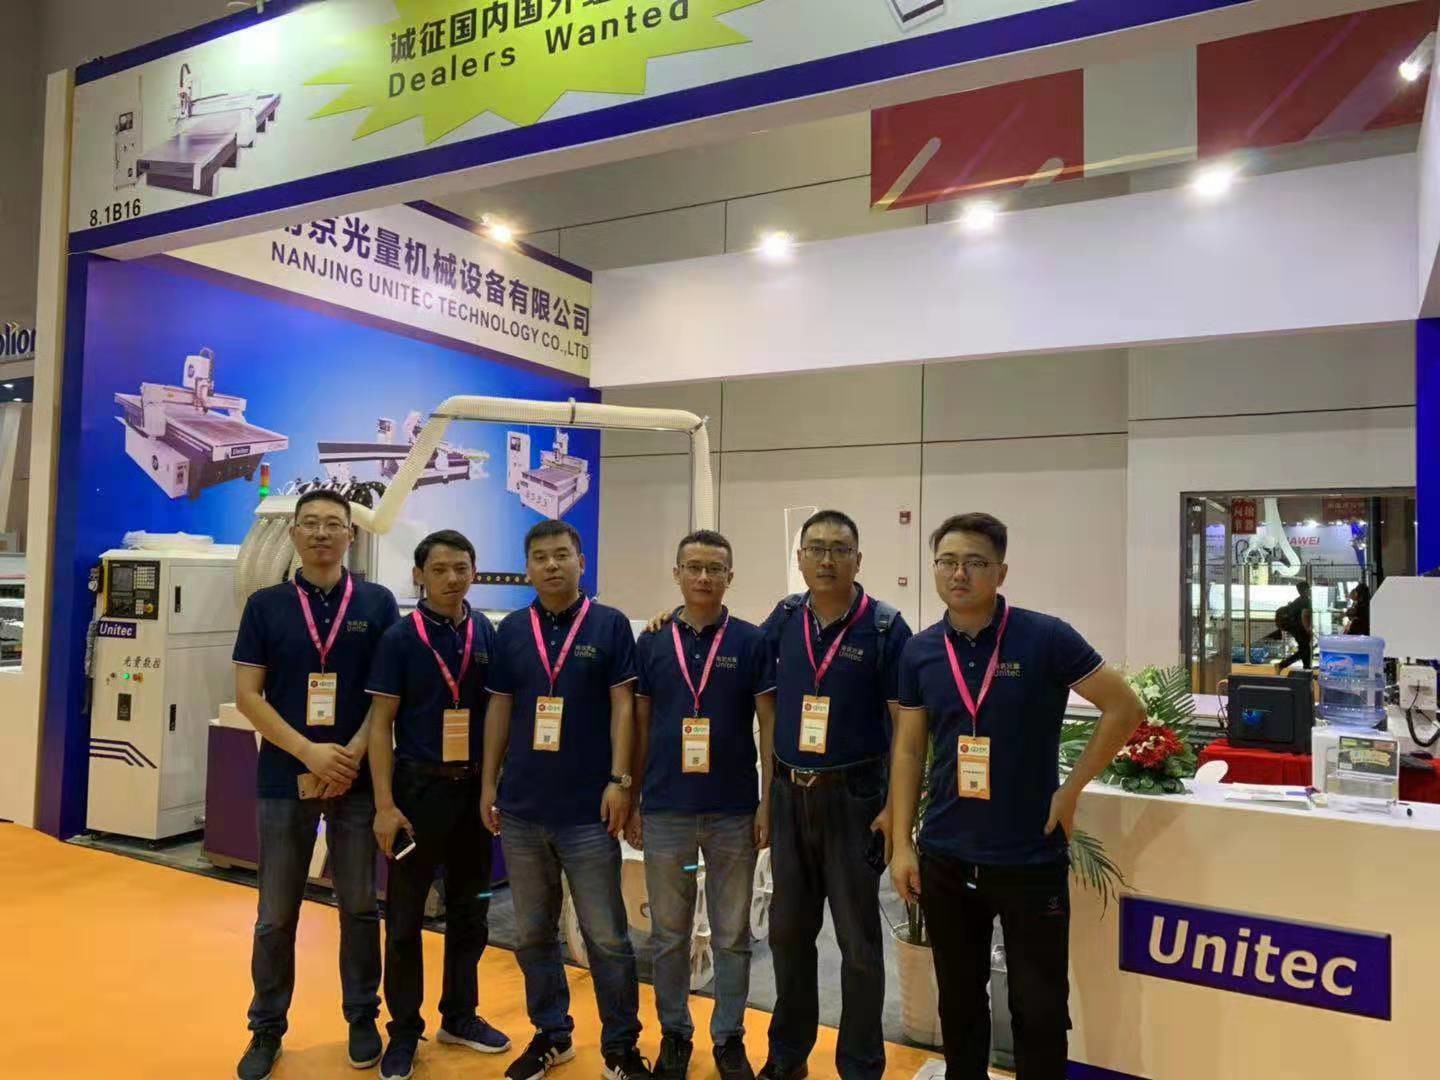 中国 Nanjing Unitec Technology Co., Ltd. 会社概要